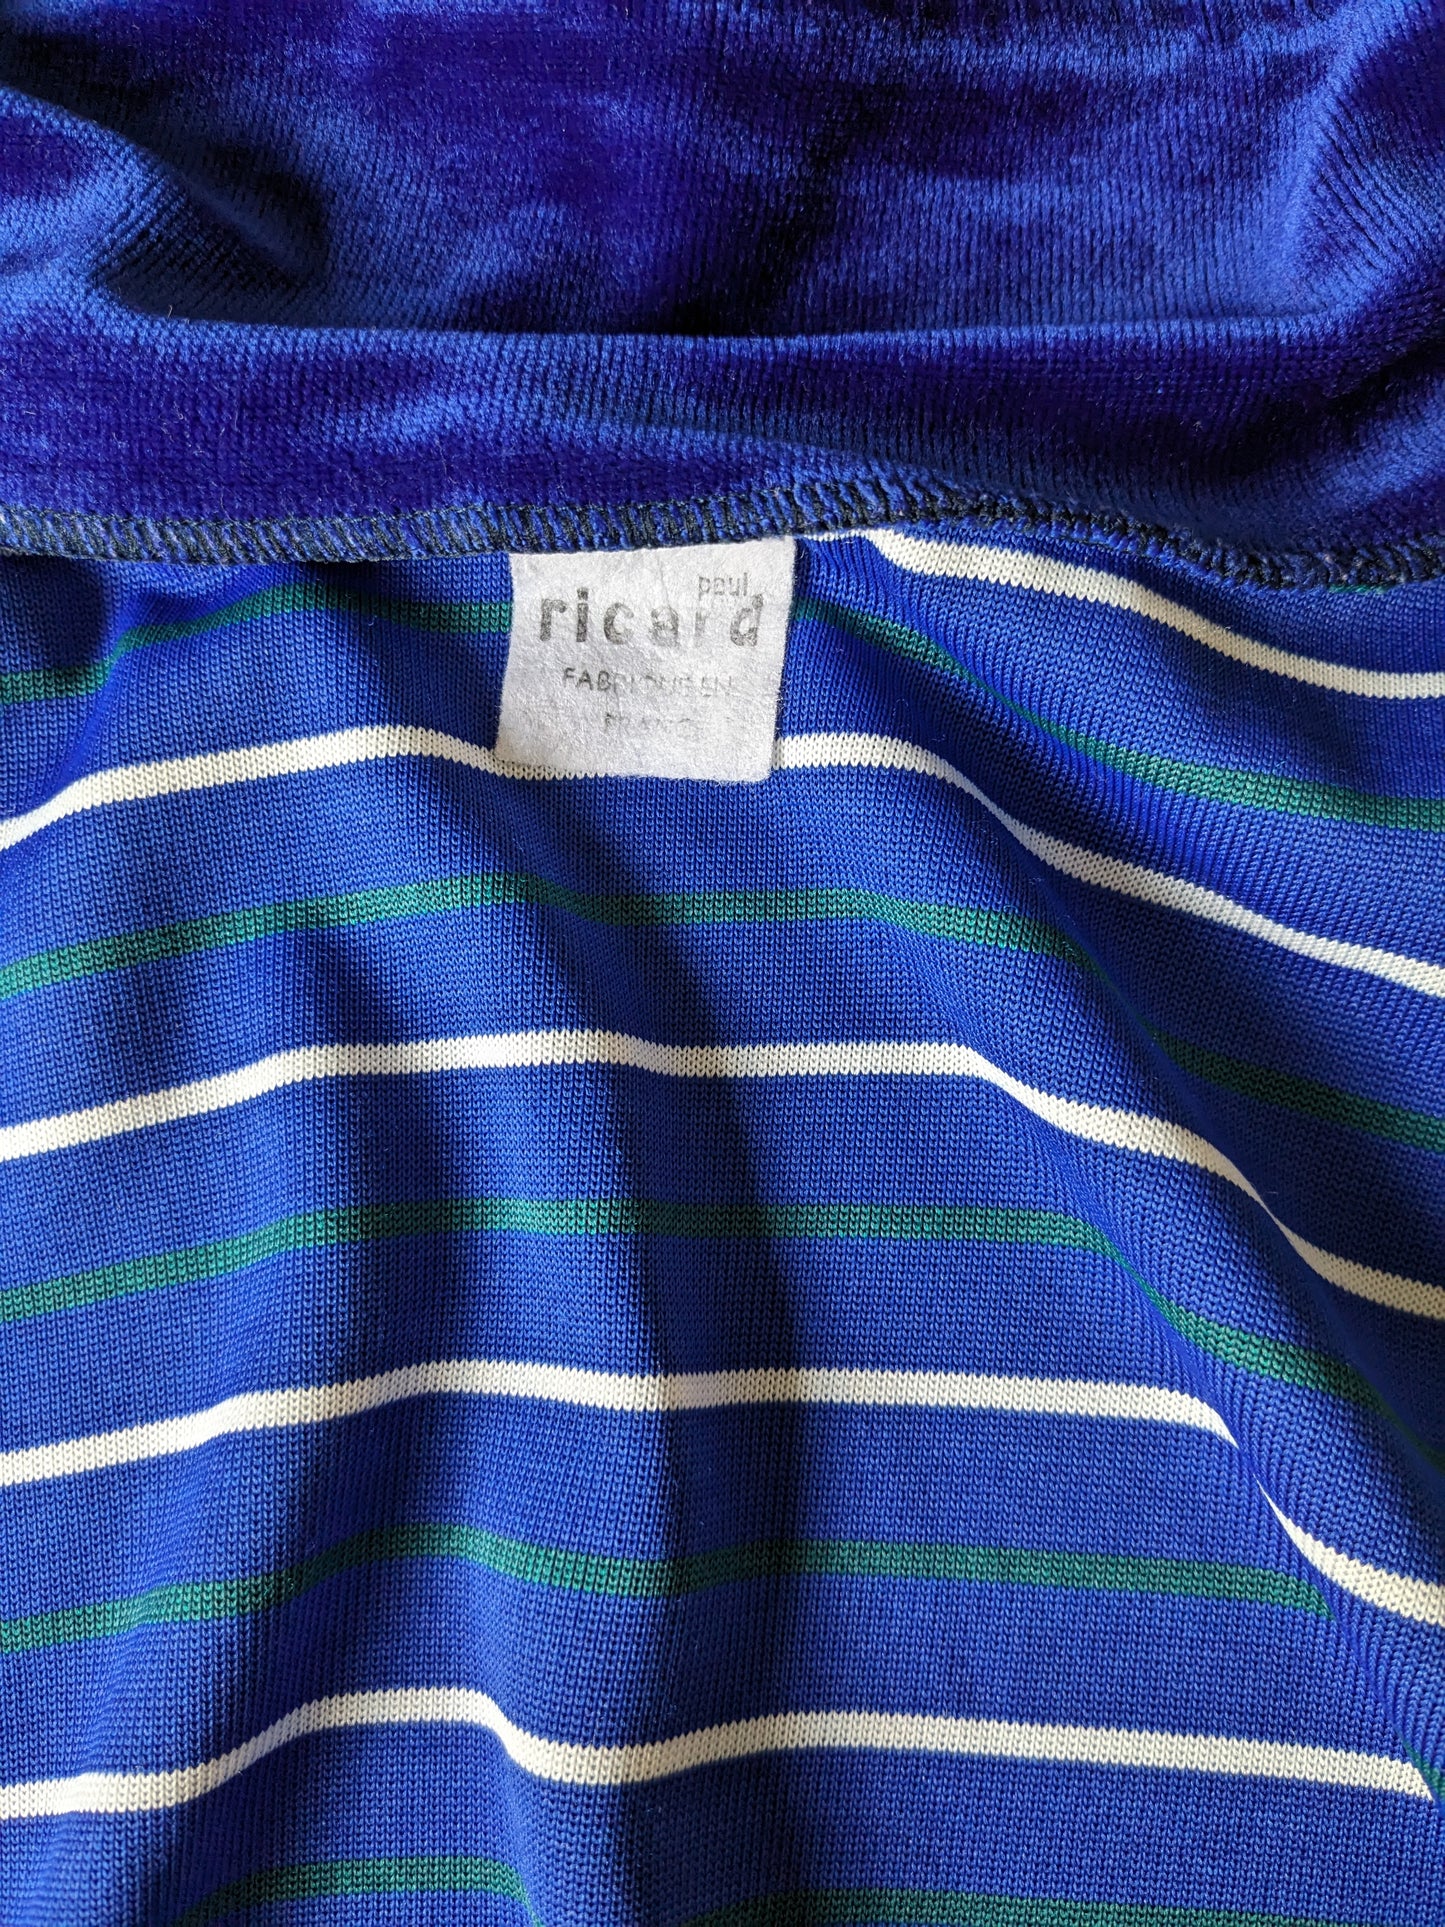 Vintage Velours / Velvet vest. Blauw Groen Wit gestreept. Maat M.